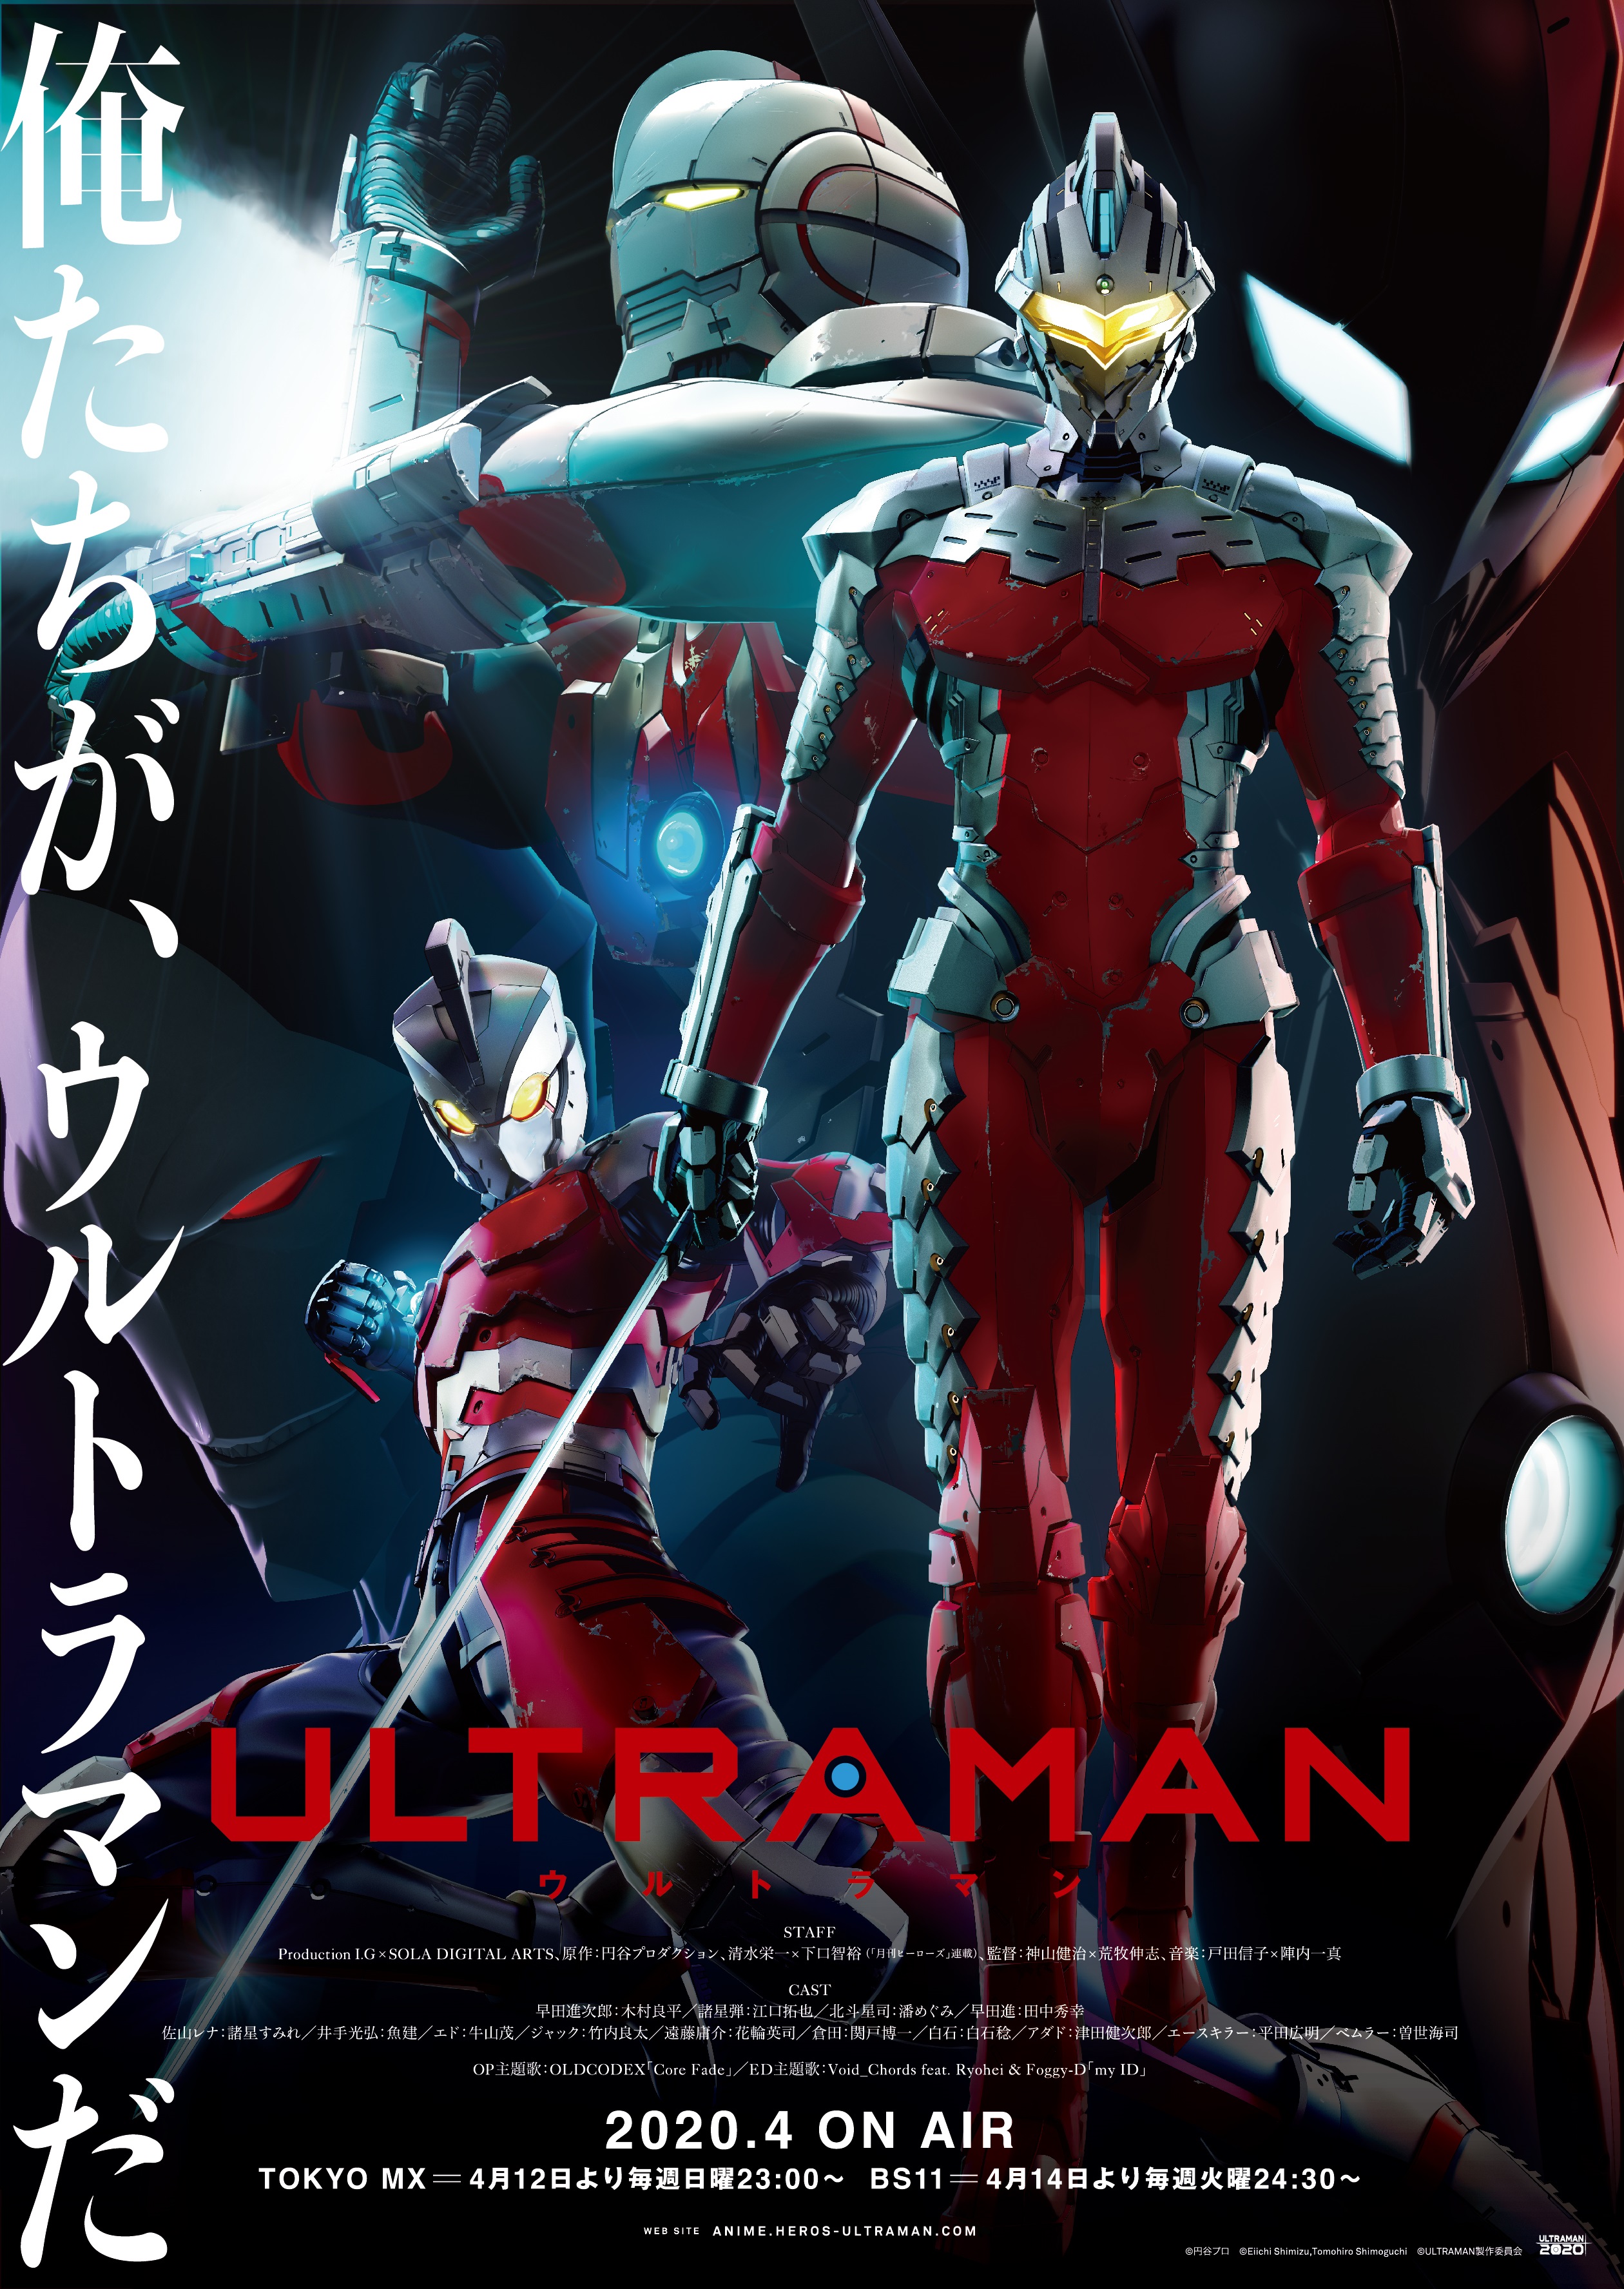 アニメ Ultraman 地上波放送日時決定 年4月12日 日 23 00 Tokyo Mx 4月14日 火 24 30 Bs11 株式会社円谷プロダクションのプレスリリース